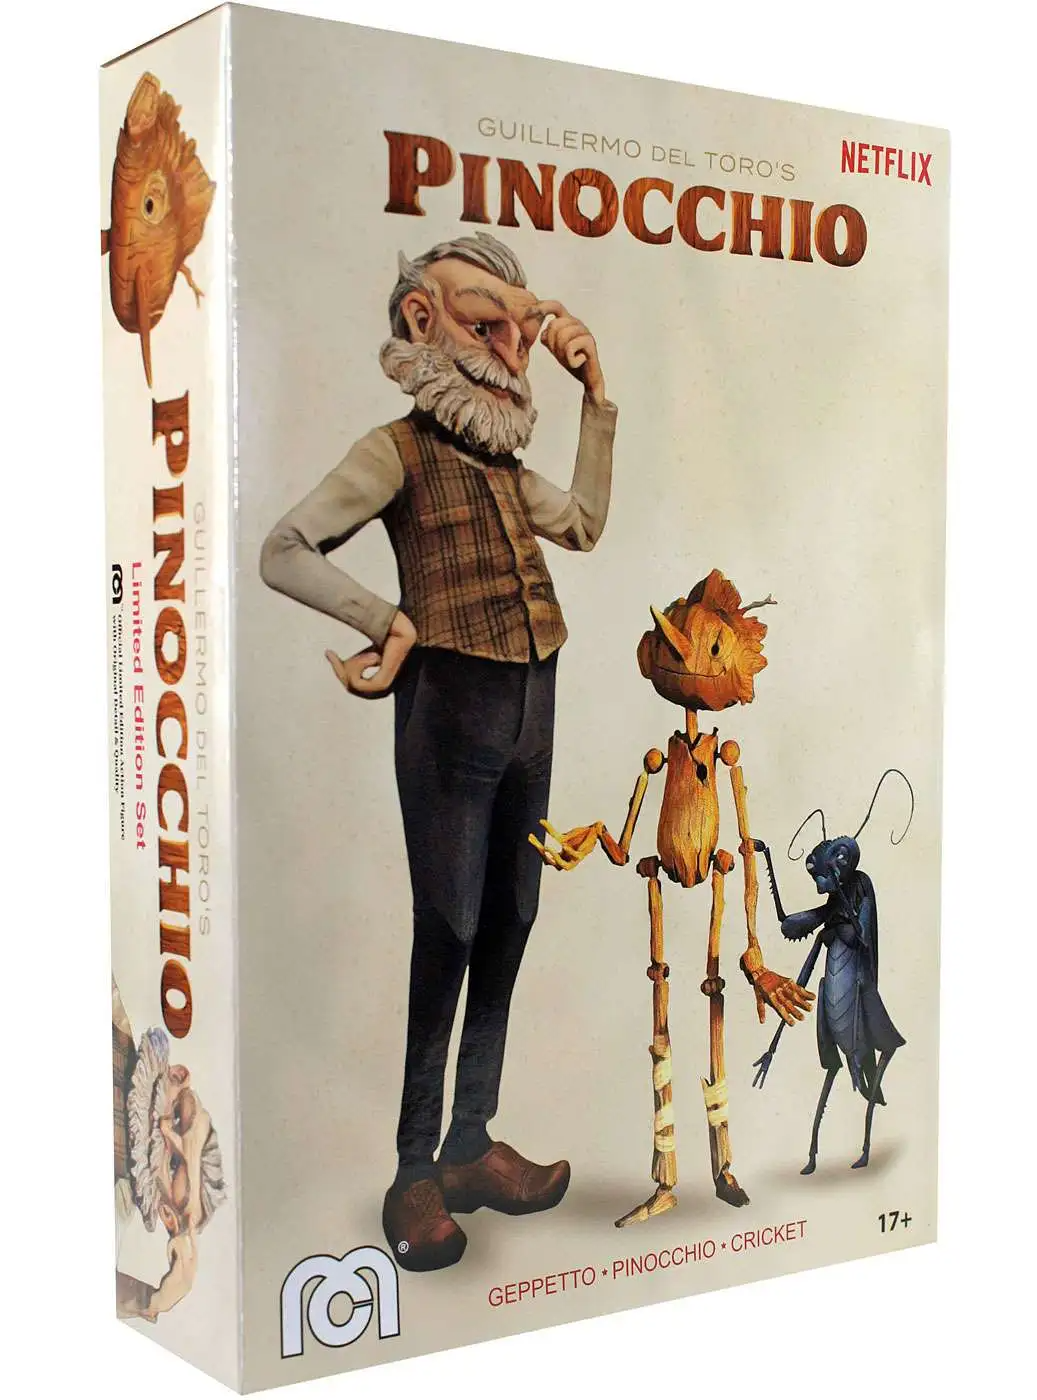 Набор фигурок Mego Pinocchio Guillermo del Toro's 20 см MG50097